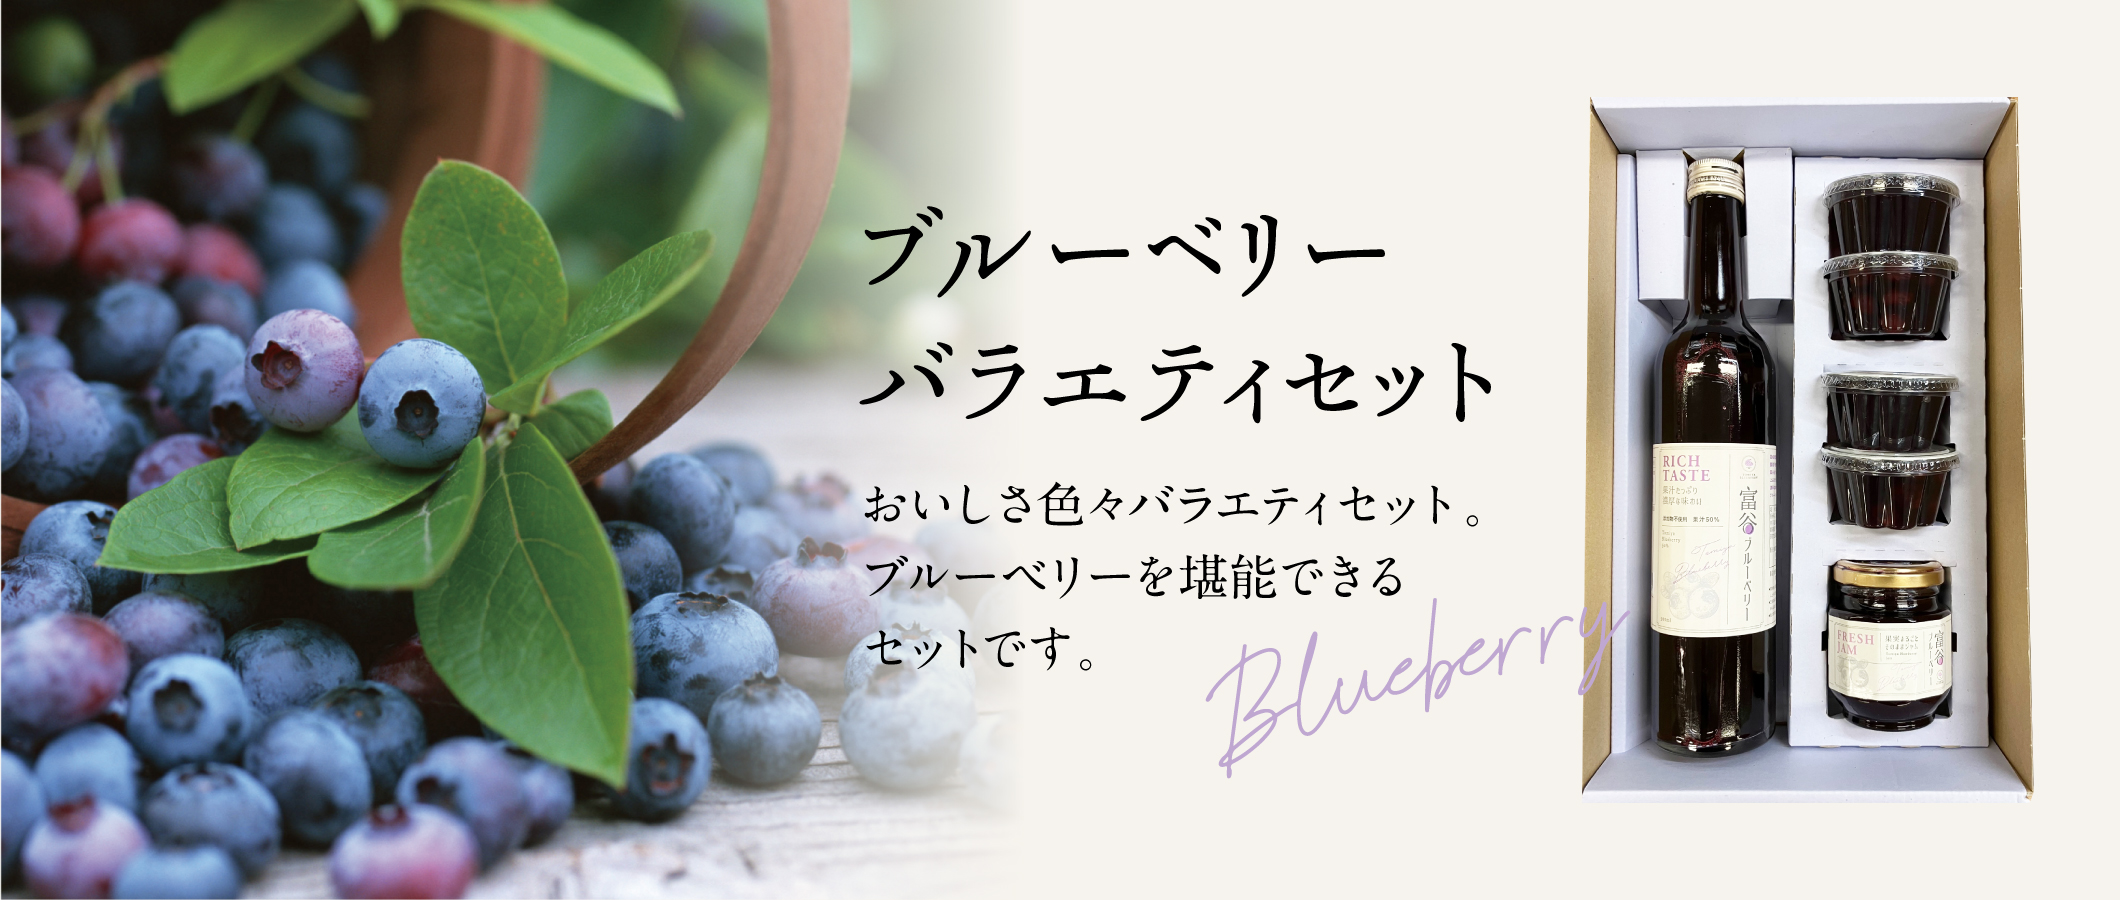 blueberry_banner_pc.jpg